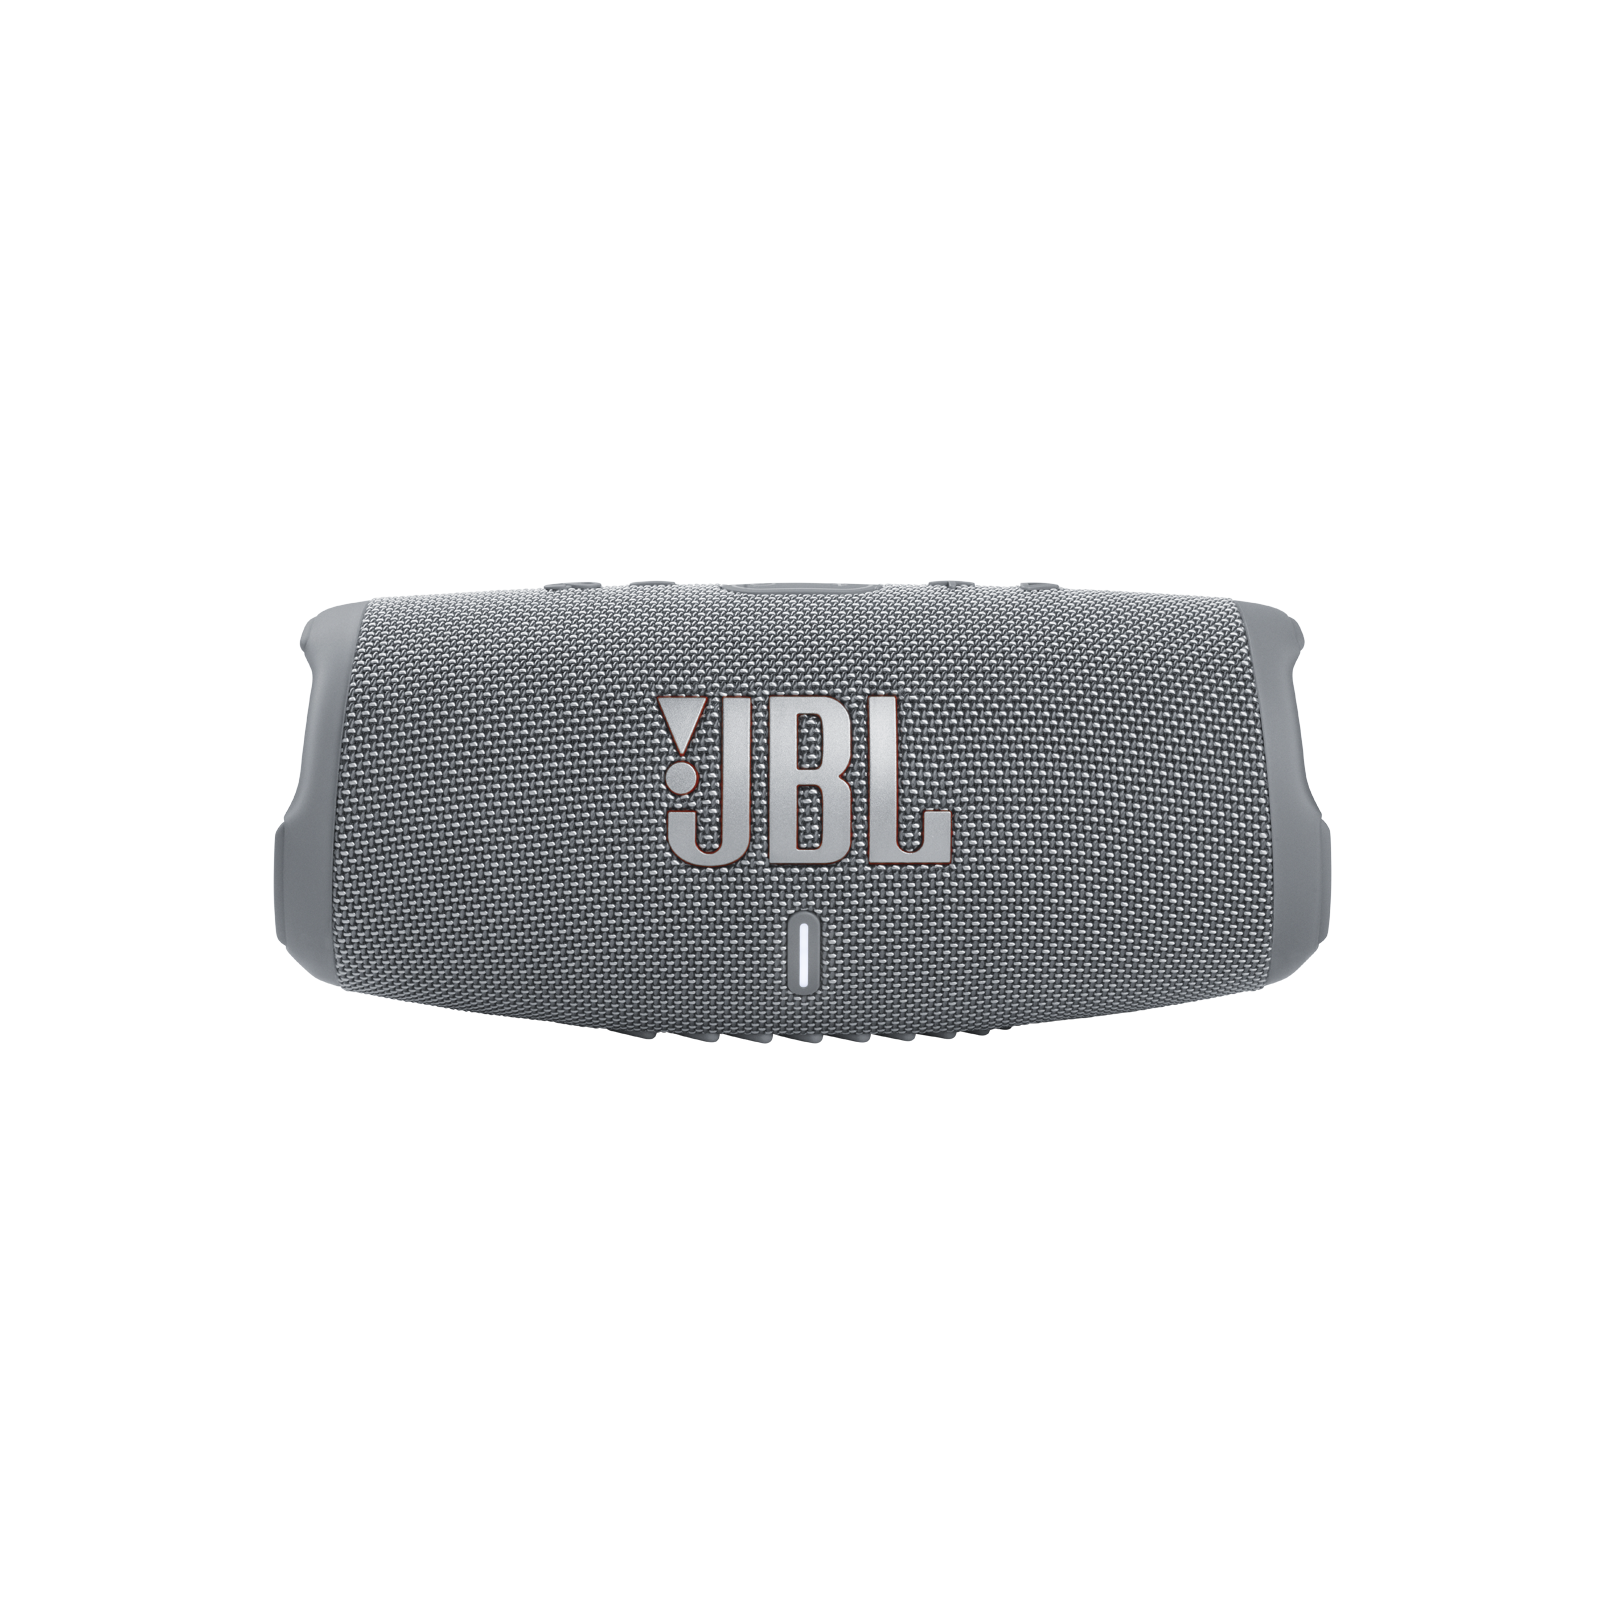 JBL CHARGE 5 | モバイルバッテリー機能付きポータブル防水スピーカー